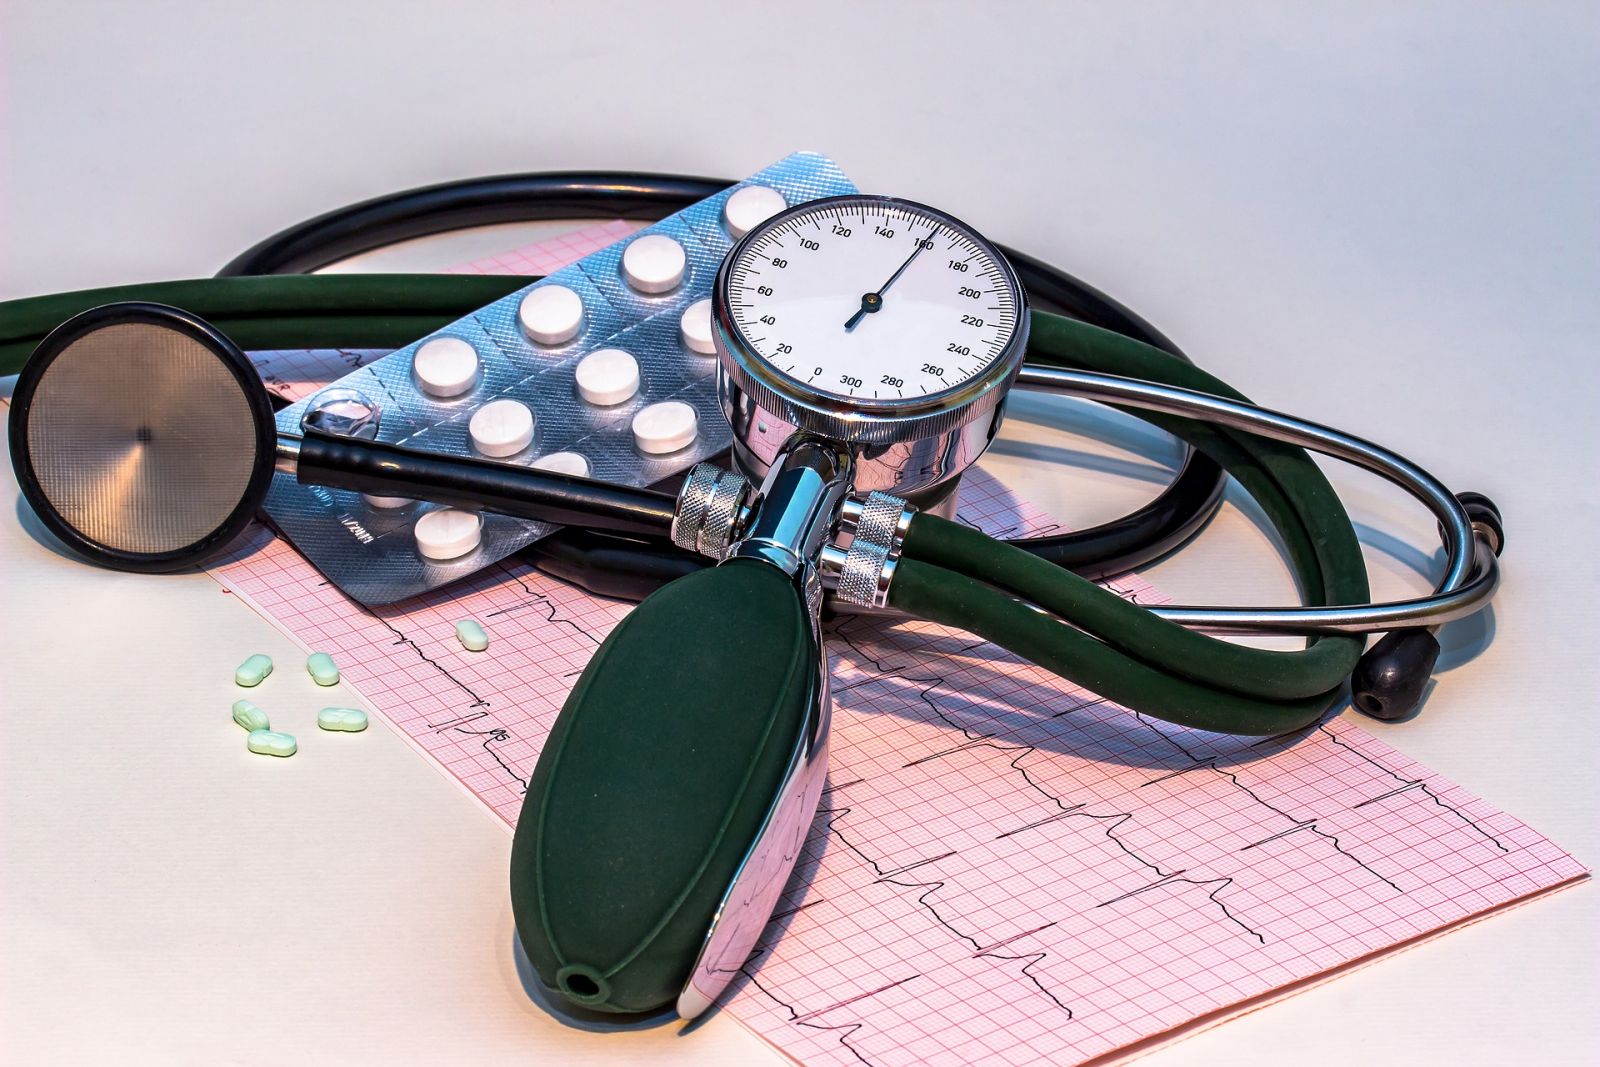 美下修高血壓標準至130/80 台跟進討論中 | 文章內置圖片